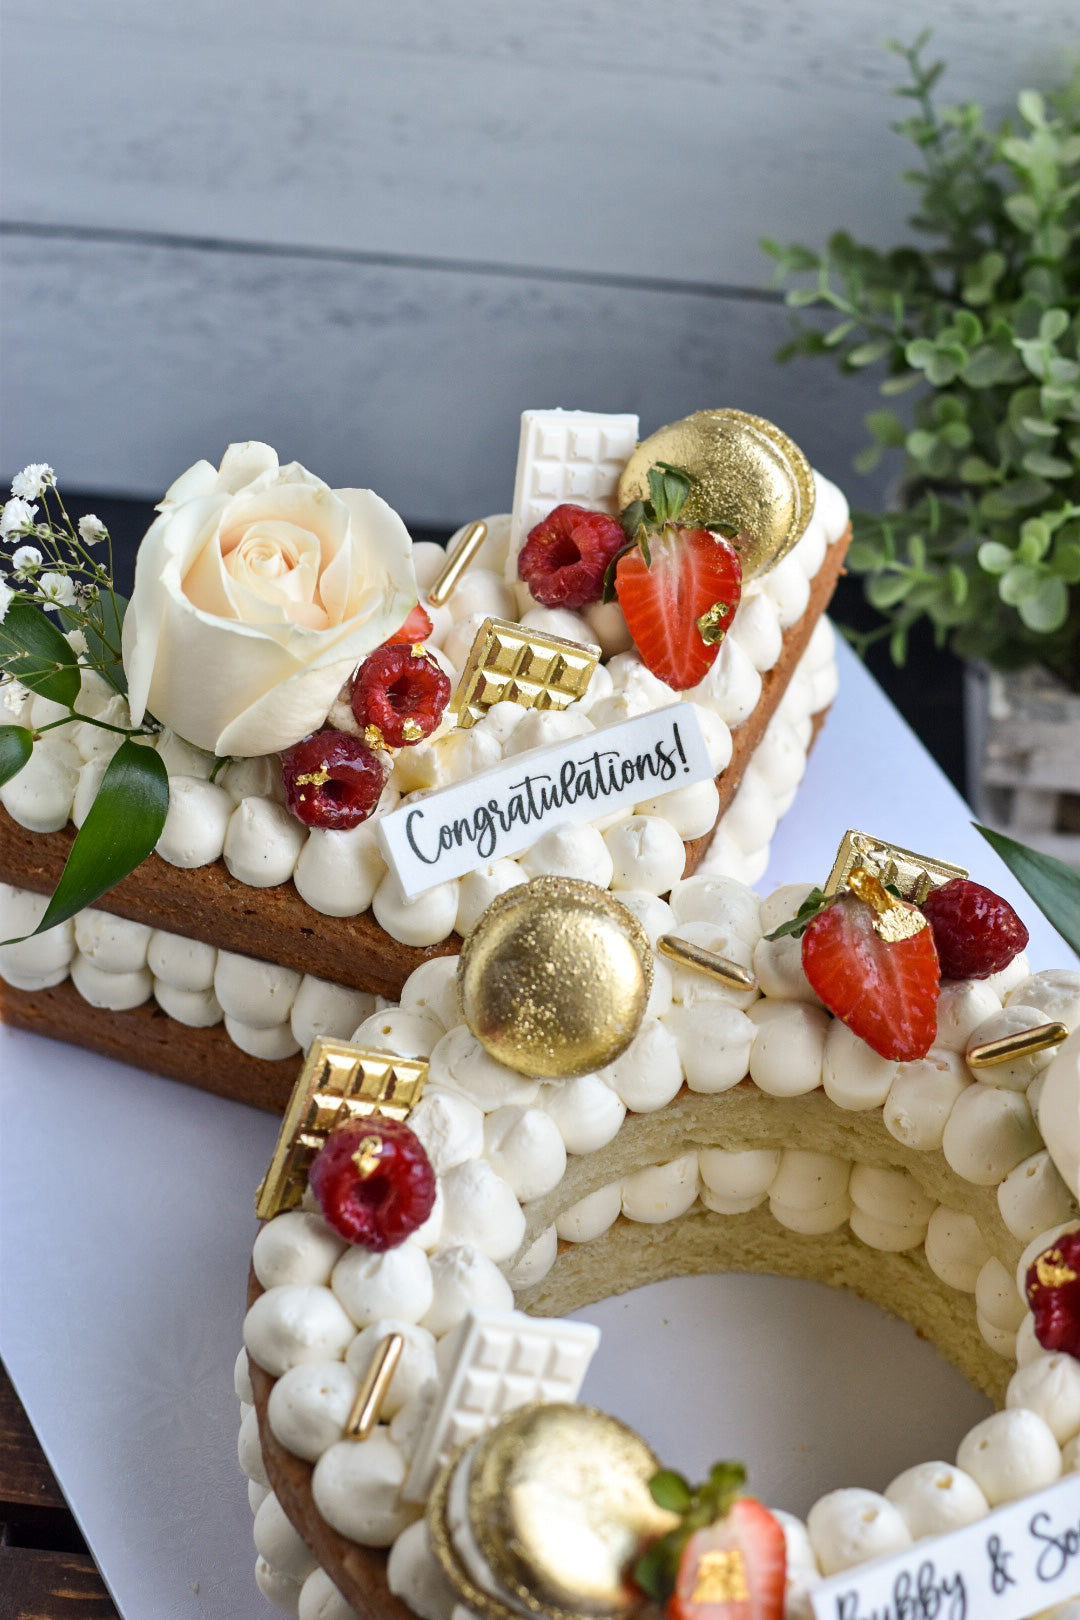 Aggregate more than 85 bachelorette cake for bride - in.daotaonec